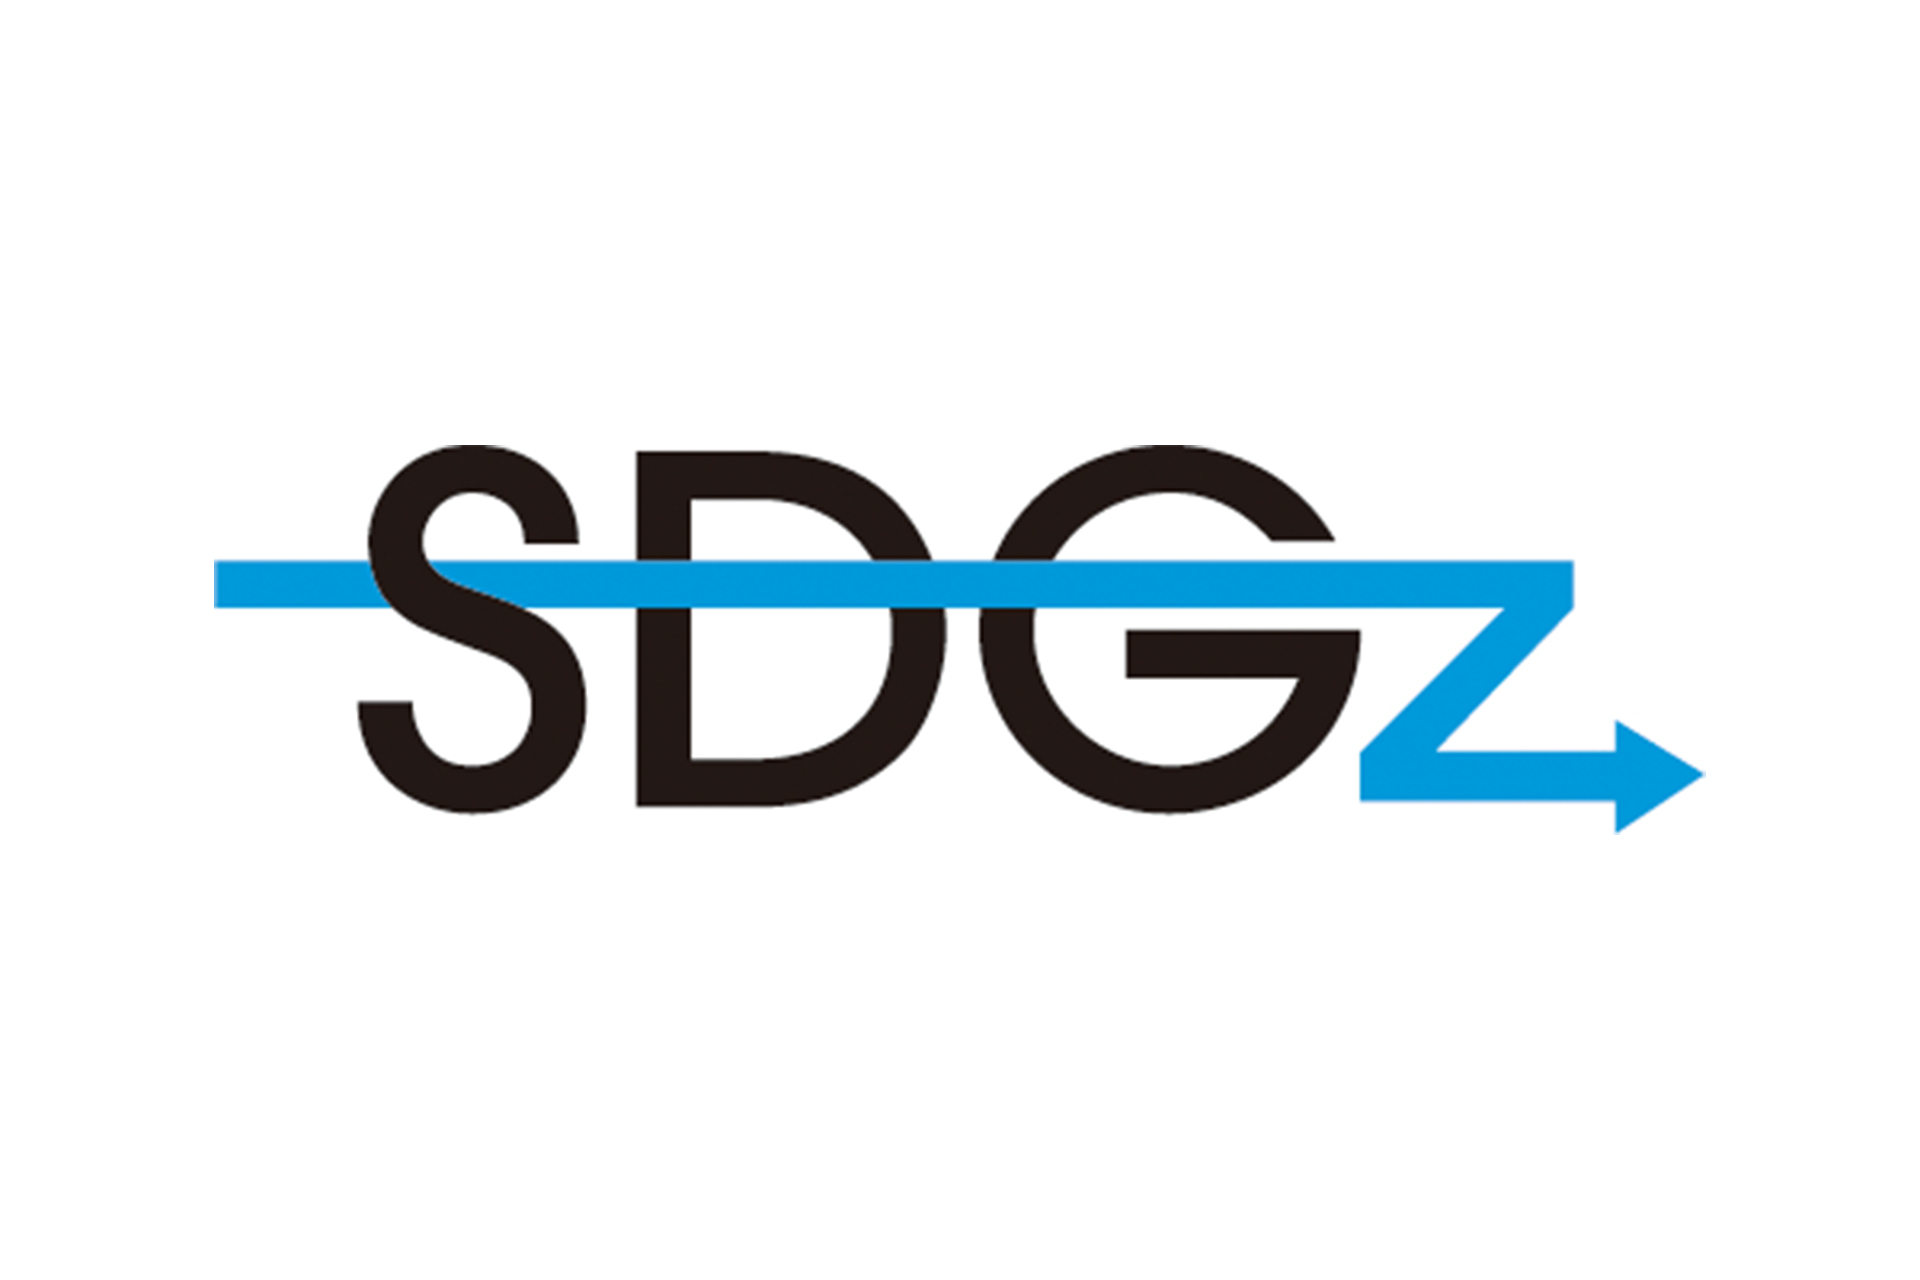 sdgz-logo event